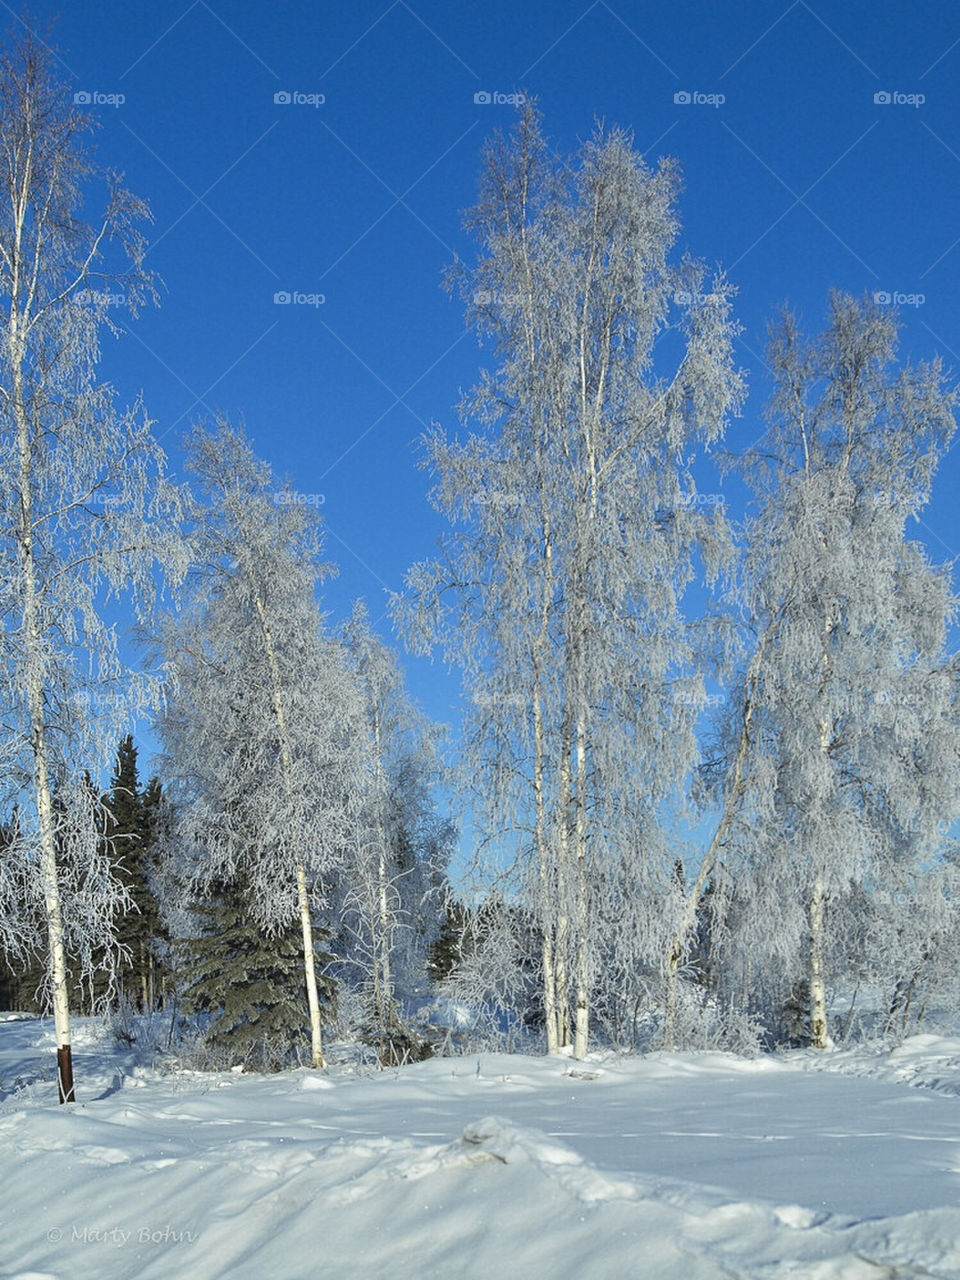 Icy trees in Alaska